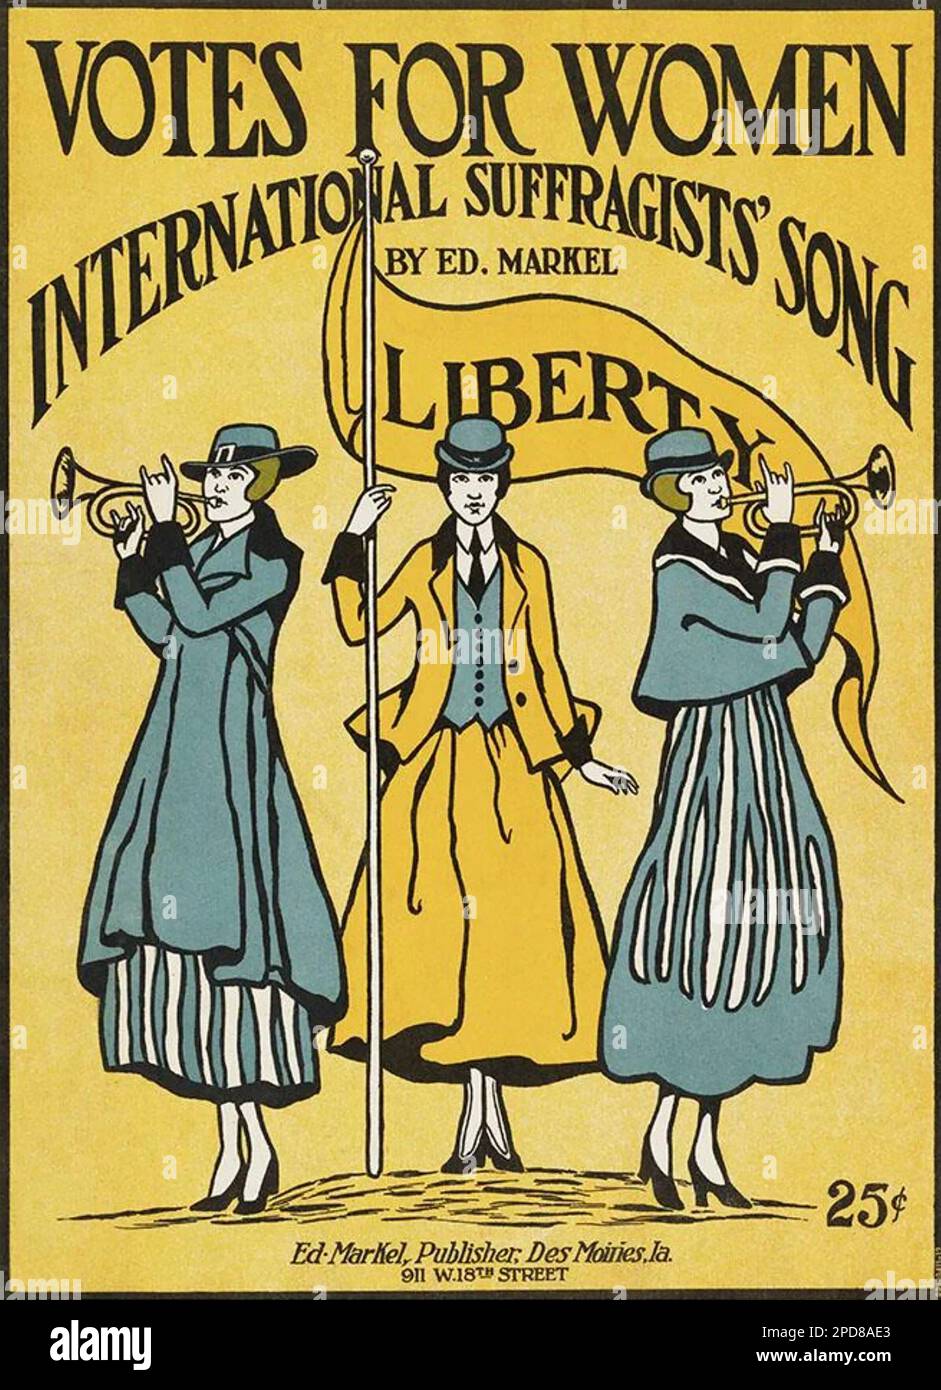 La hoja de canciones de VOTOS PARA MUJERES publicada por la compositora estadounidense Ed. Markel en 1916 Foto de stock